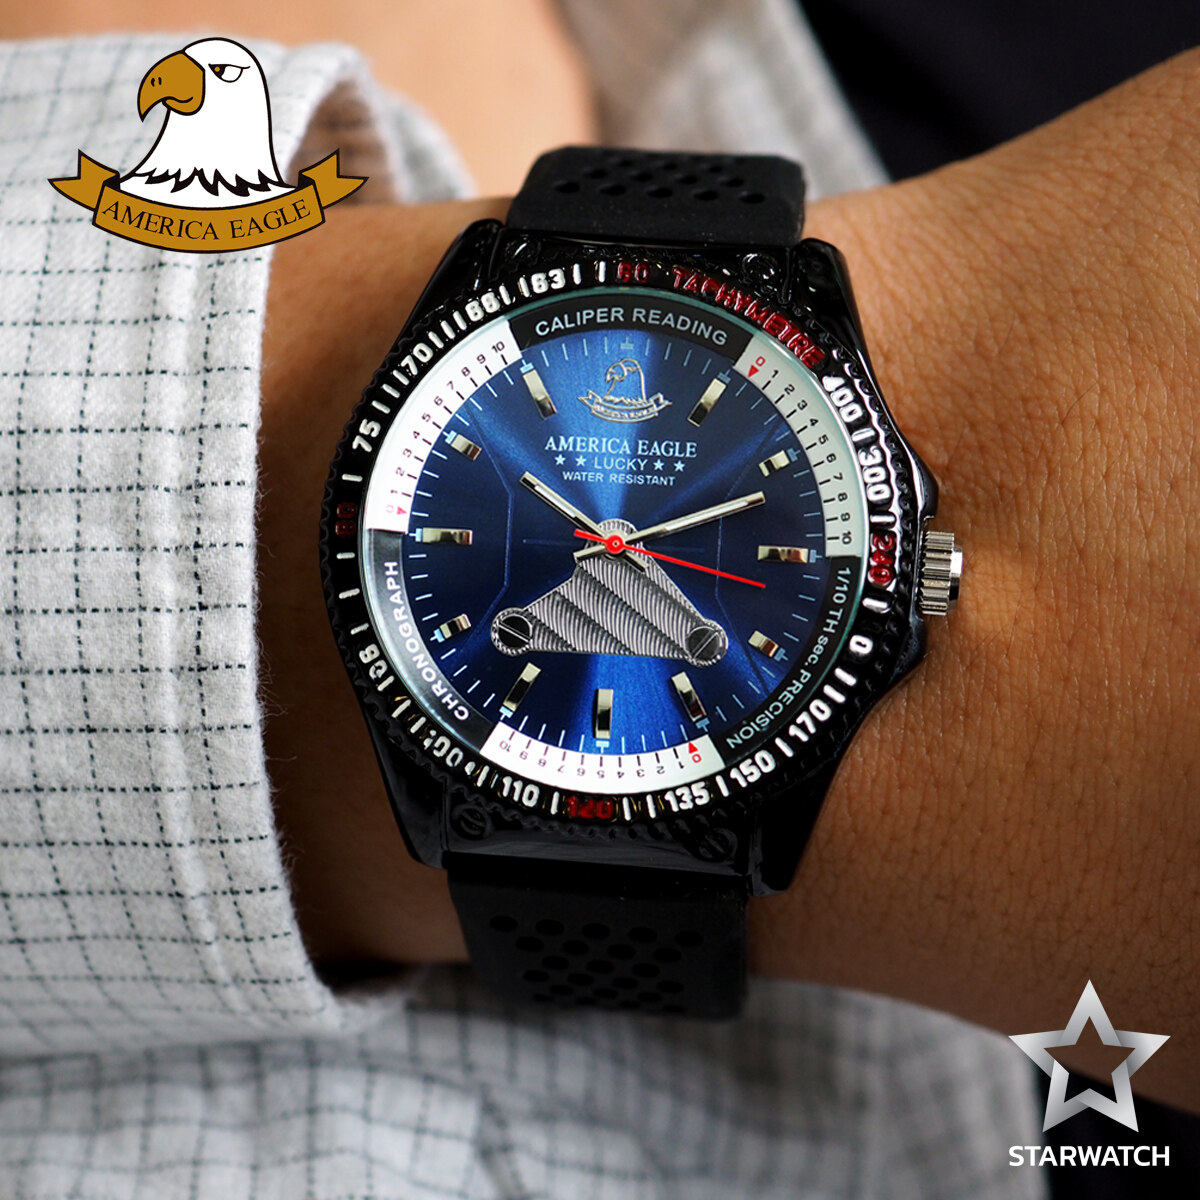 โปรโมชั่น Flash Sale : GRAND EAGLE นาฬิกาข้อมือสุภาพบุรุษ สายยางเรซิ่นรุ่น AE035G - Black / Blue